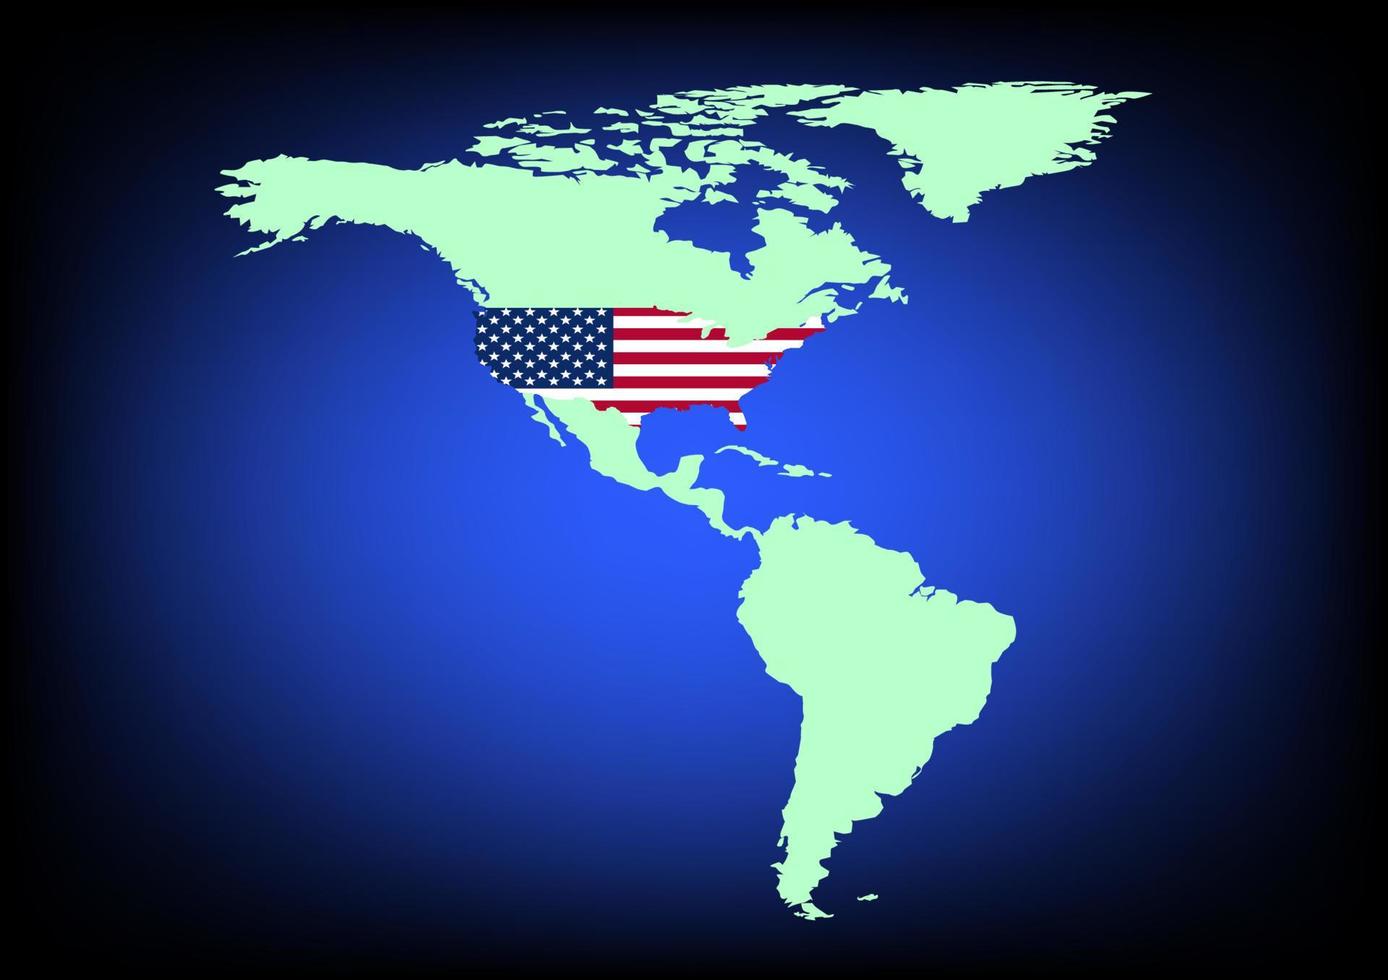 Grafikdesign Usa-Flagge auf Karte mit blauer Hintergrundvektorillustration vektor